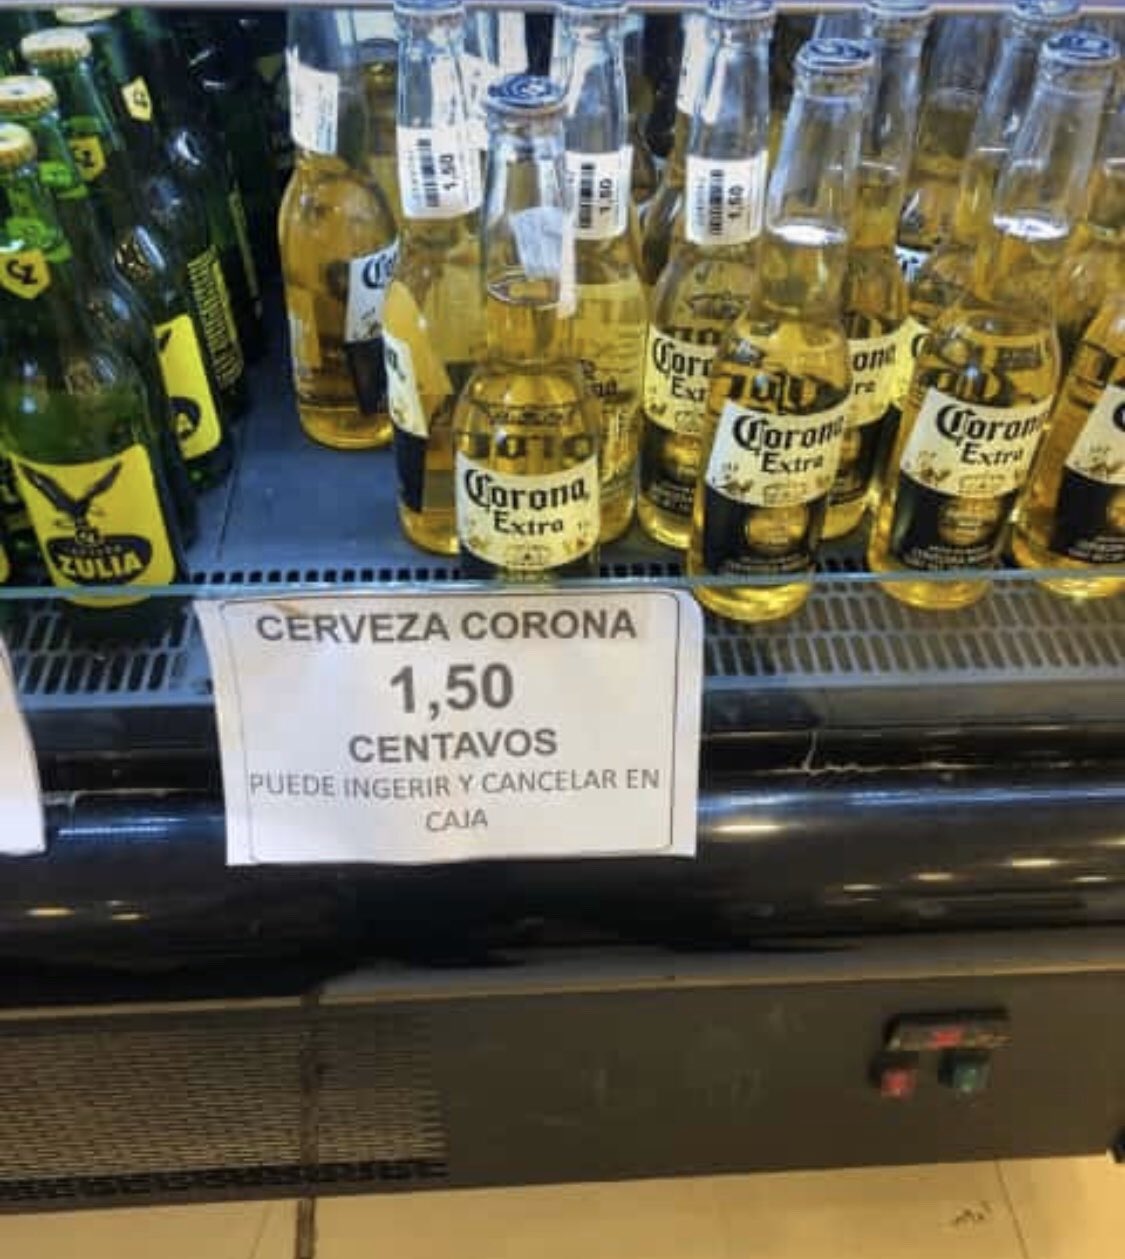 Luis Urbe on X: "SÓLO EN VENEZUELA 🚨: supuestamente en Traki puedes  ingerir tu Cerveza Corona dentro de la tienda mientras compras y la pagas  al salir en la caja. Lo mejor